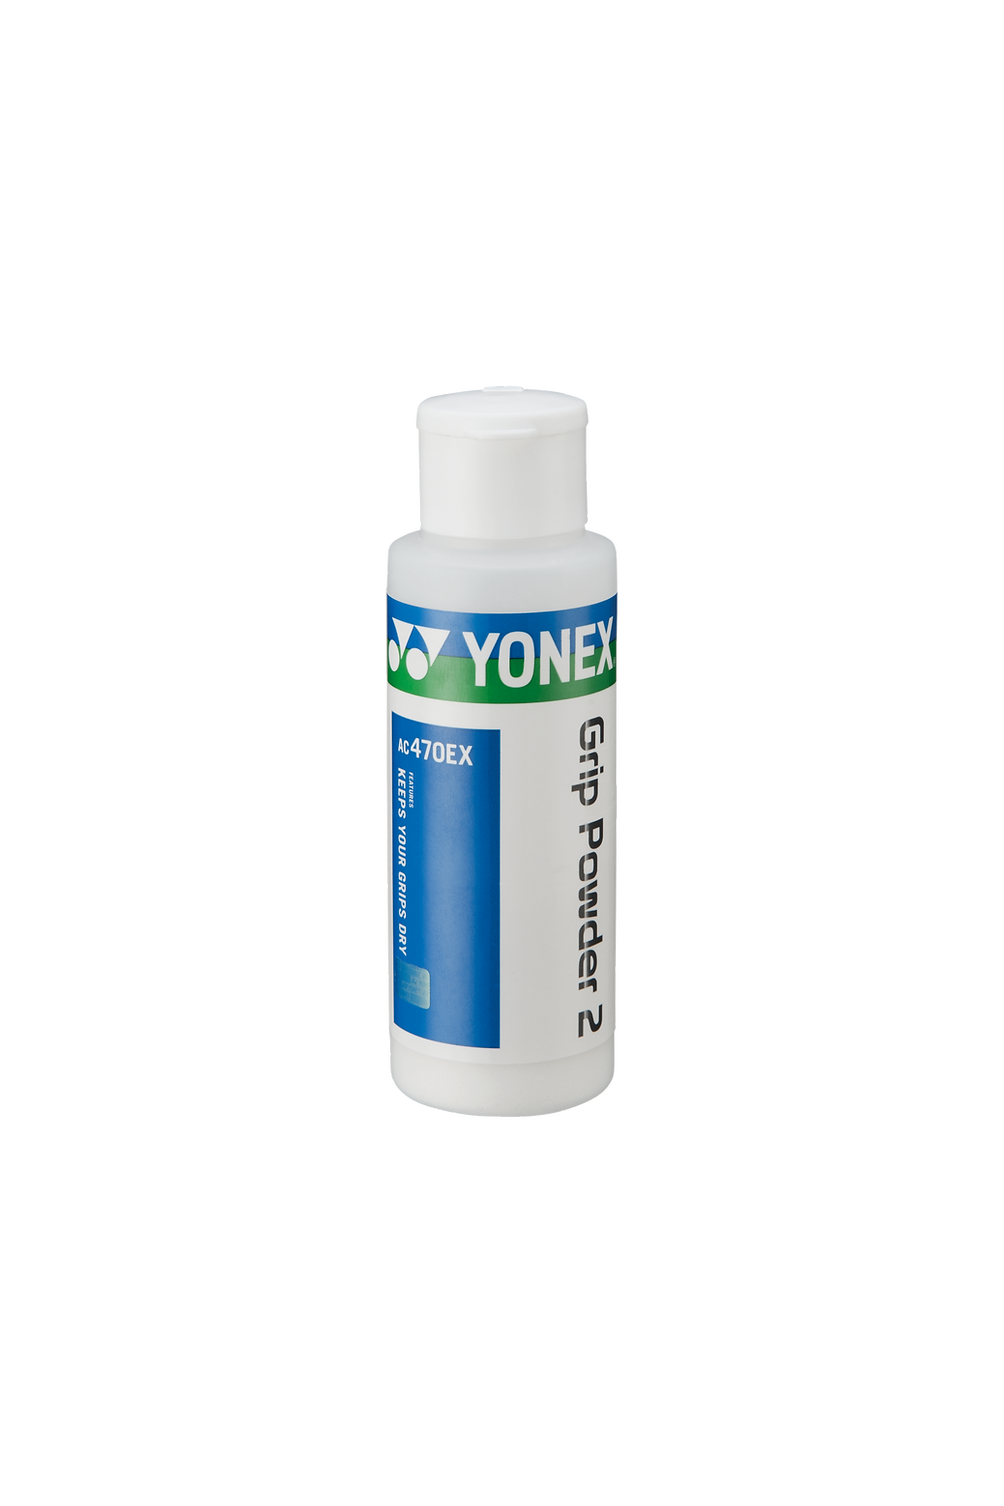 Yonex Grip Powder 2 AC470EX 20g